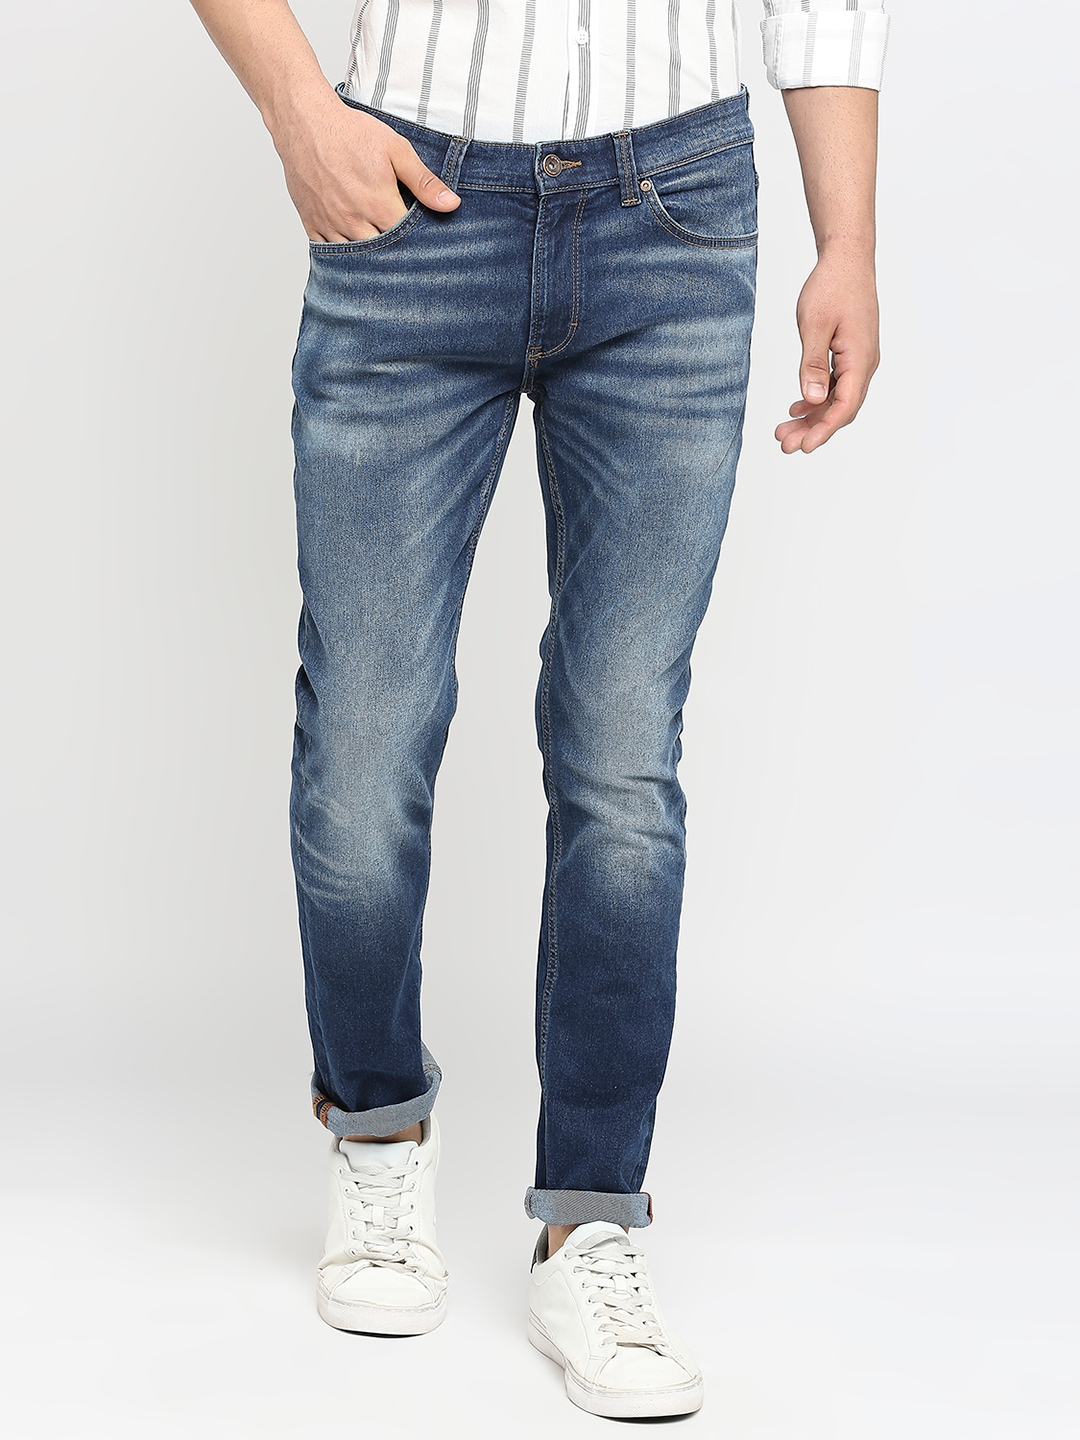 Men's Blue Cotton Solid Jeans